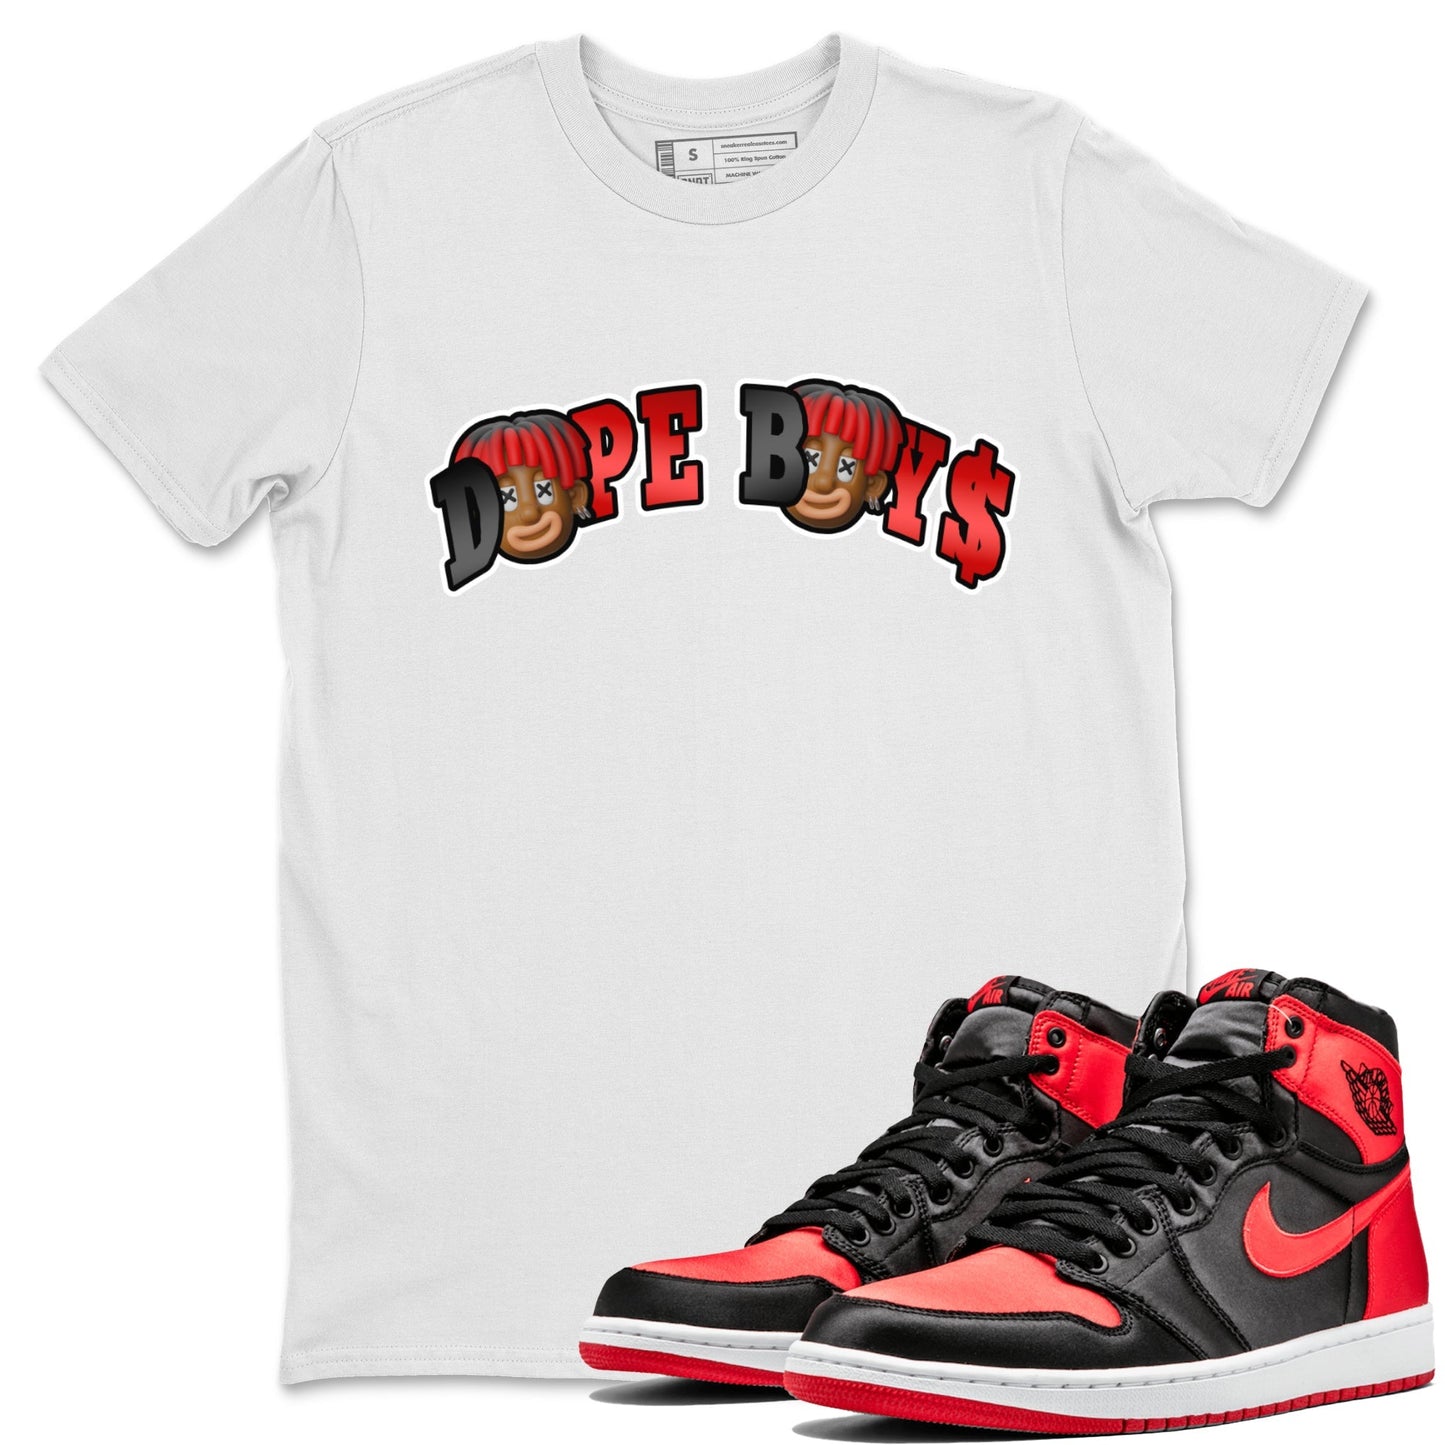 Air Jordan 1 Satin Bred Sneaker Match Tees Dope Boy Sneaker Tees AJ1 Satin Bred Sneaker Release Tees Unisex Shirts White 1